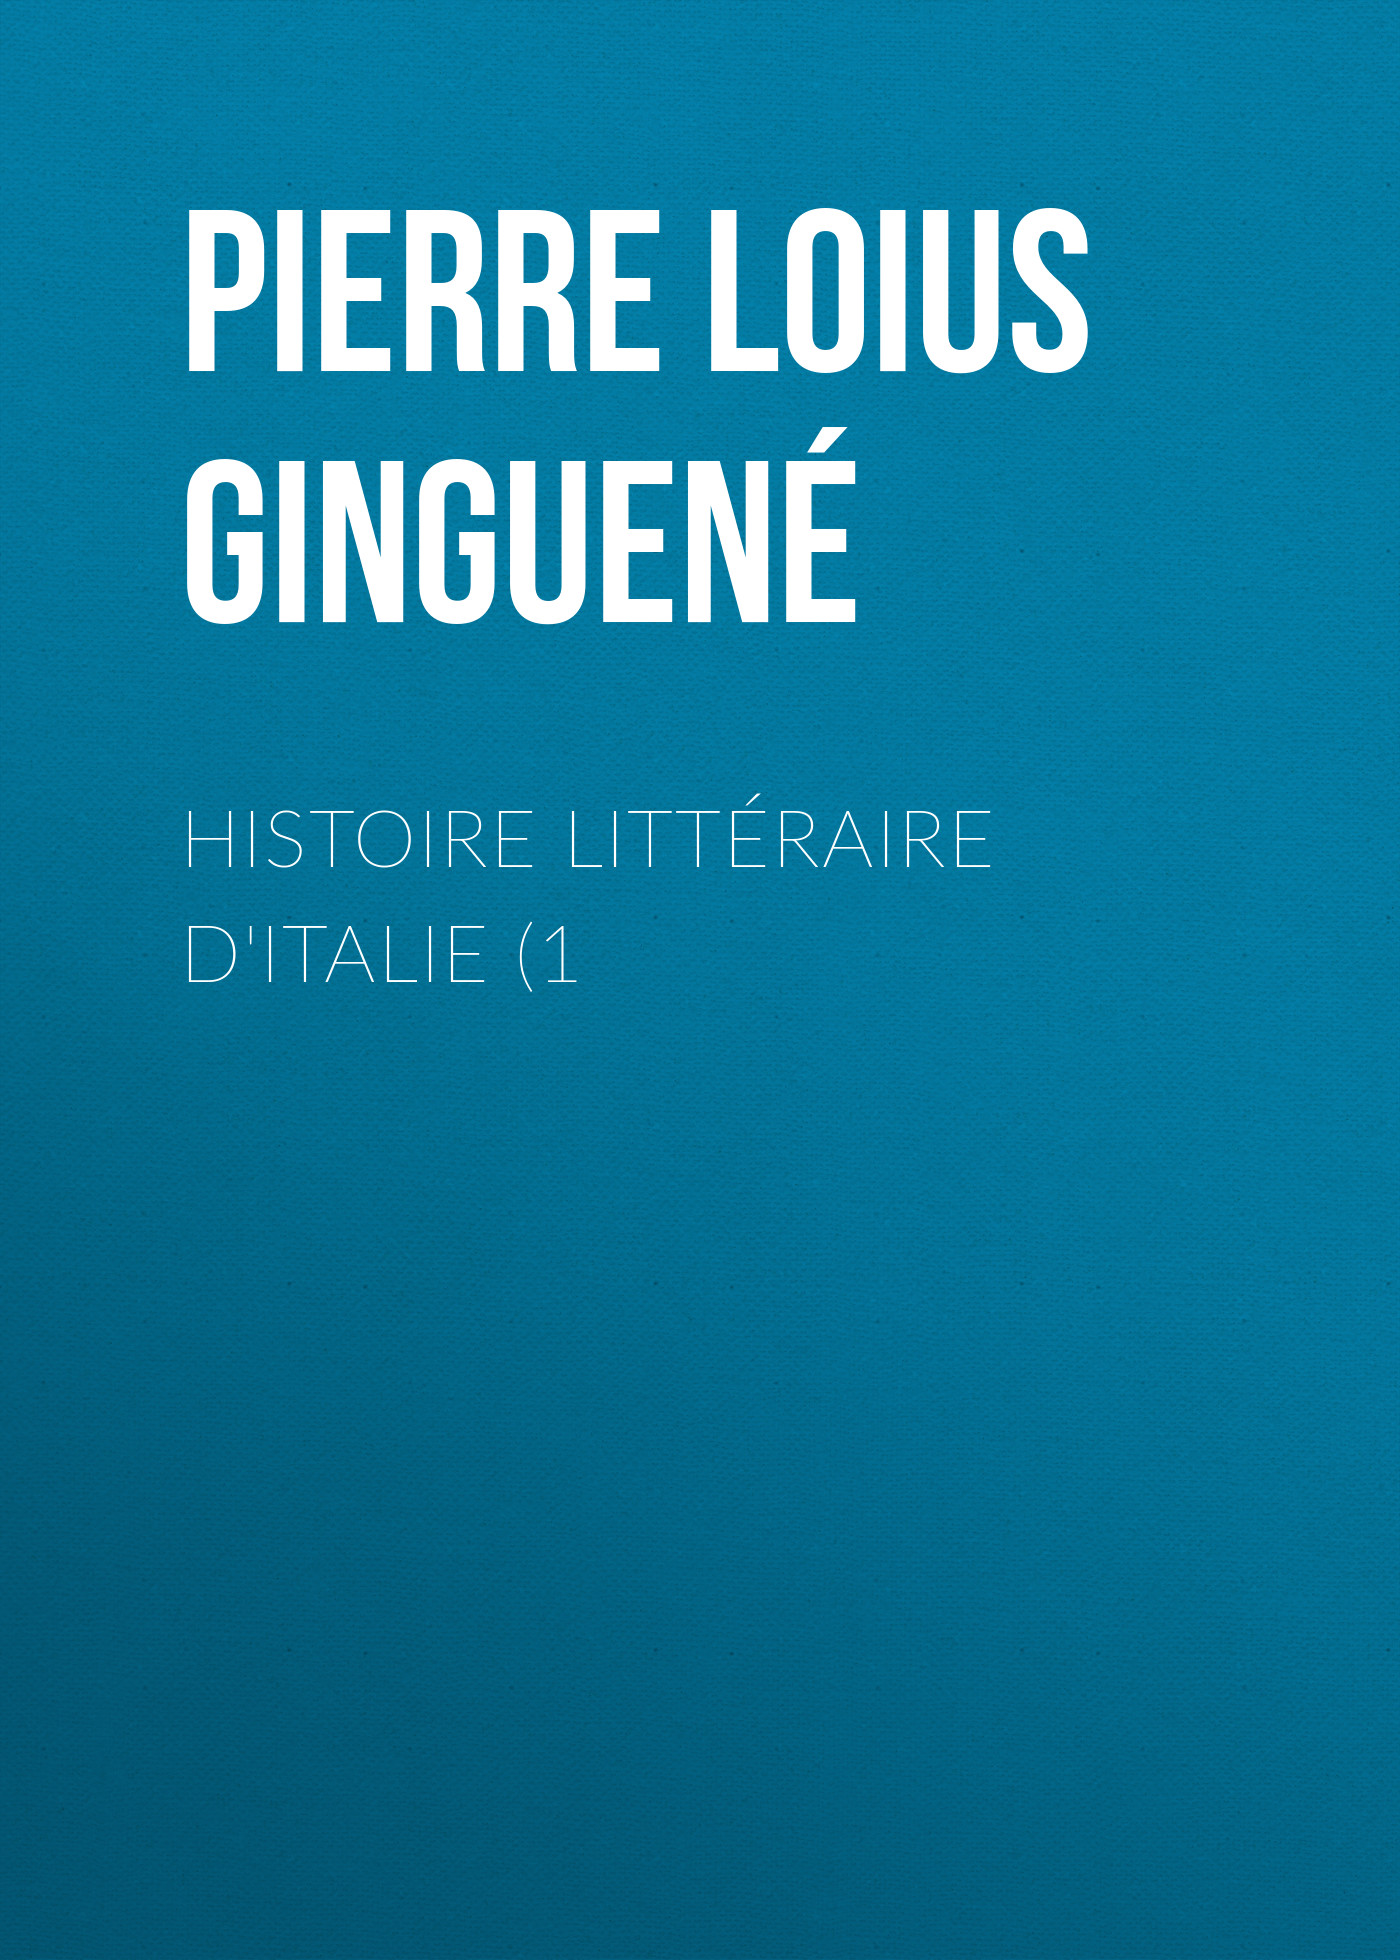 Книга Histoire littéraire d'Italie (1 из серии , созданная Pierre Ginguené, может относится к жанру Критика, Зарубежная старинная литература, Зарубежная классика. Стоимость электронной книги Histoire littéraire d'Italie (1 с идентификатором 24936197 составляет 0 руб.